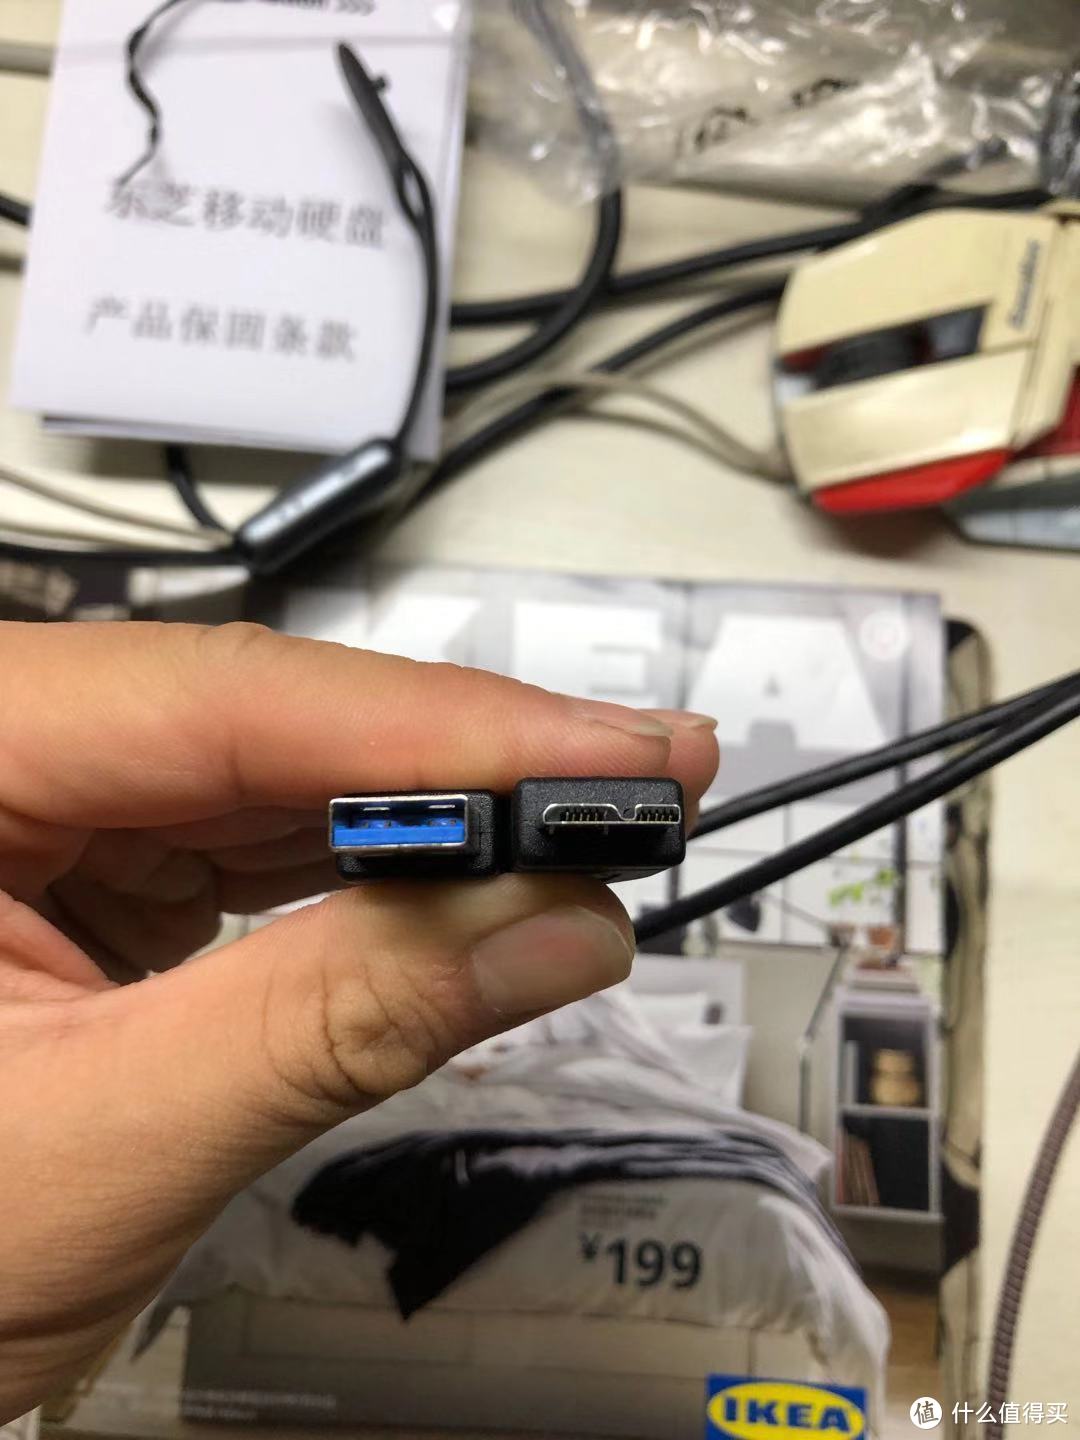 东芝(TOSHIBA) 2TB USB3.0 移动硬盘 Alumy购买及使用感受